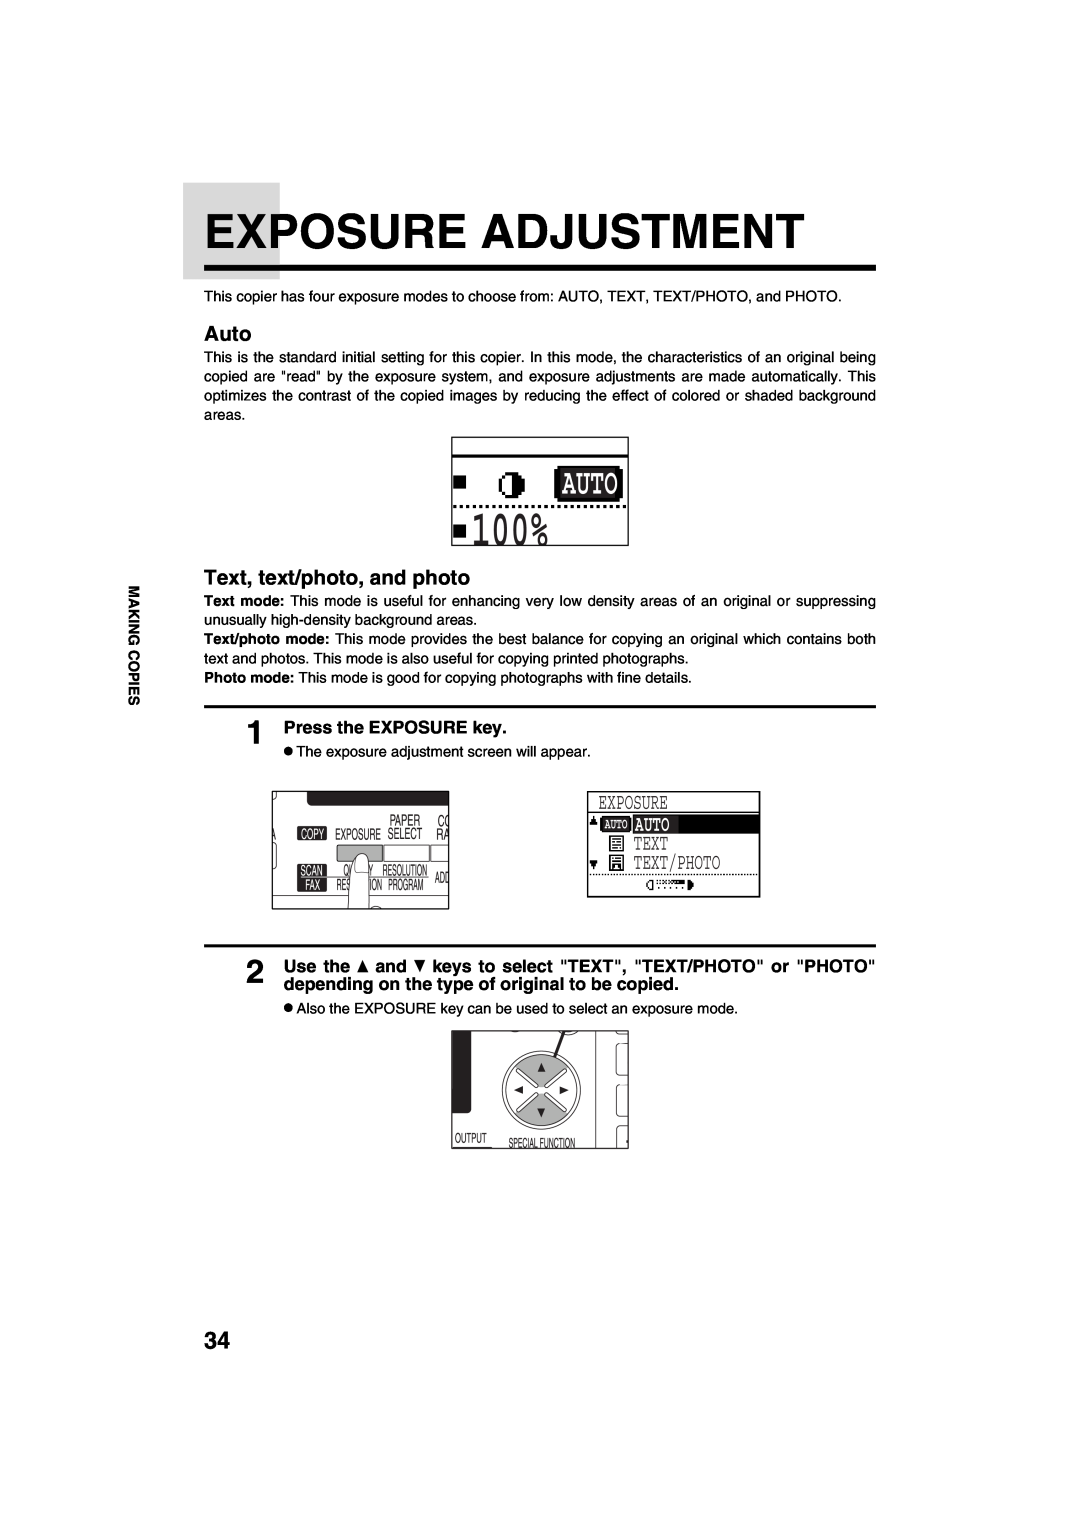 Sharp AR-M208 Exposure Adjustment, Text Text/Photo, Auto, Text, text/photo, and photo, Press the EXPOSURE key, 100% 